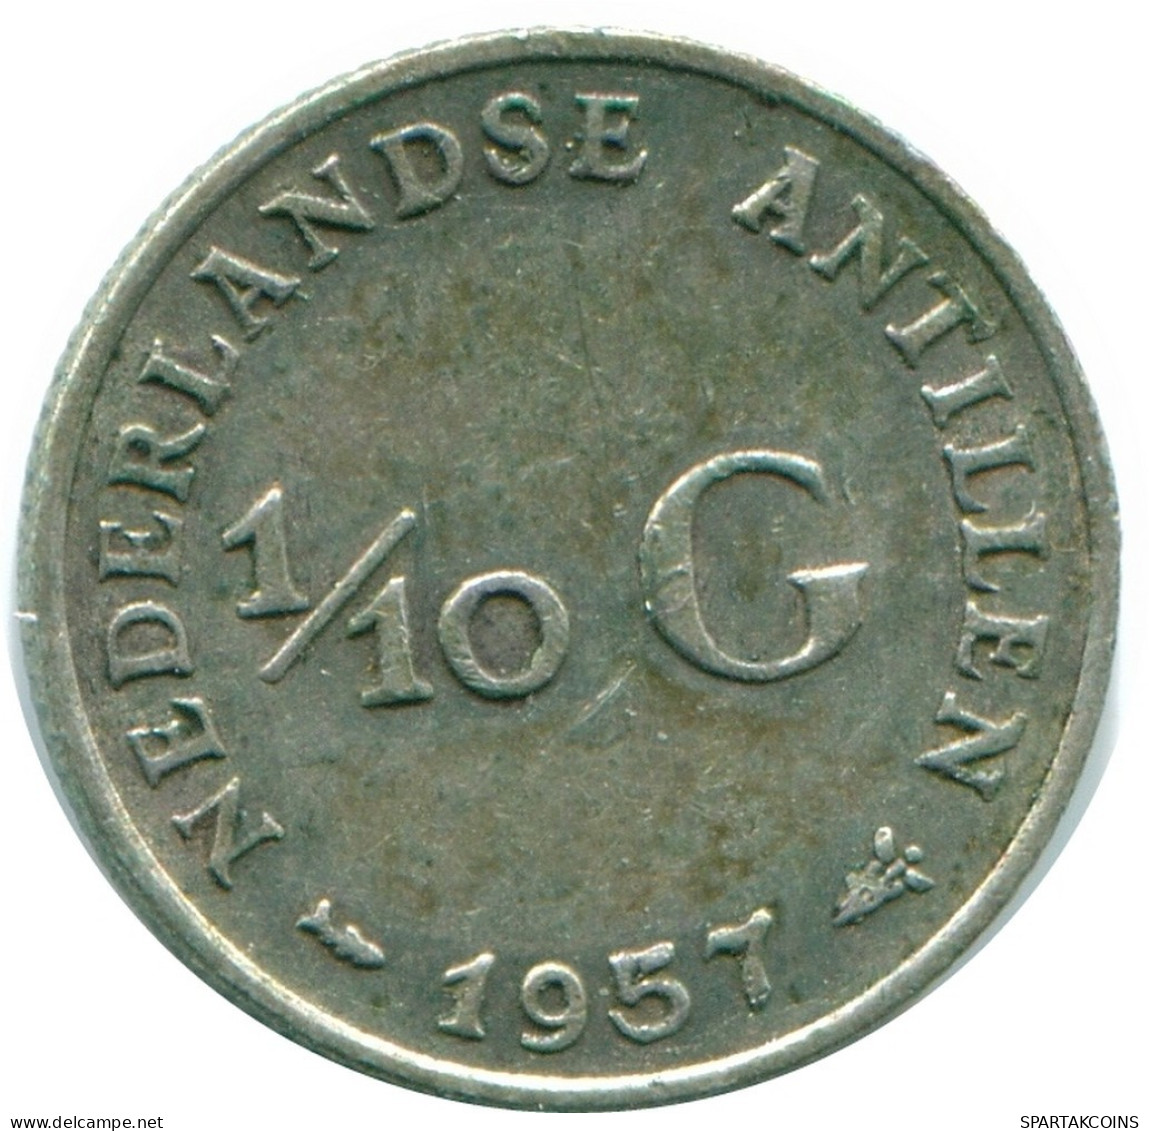 1/10 GULDEN 1957 NIEDERLÄNDISCHE ANTILLEN SILBER Koloniale Münze #NL12188.3.D.A - Nederlandse Antillen